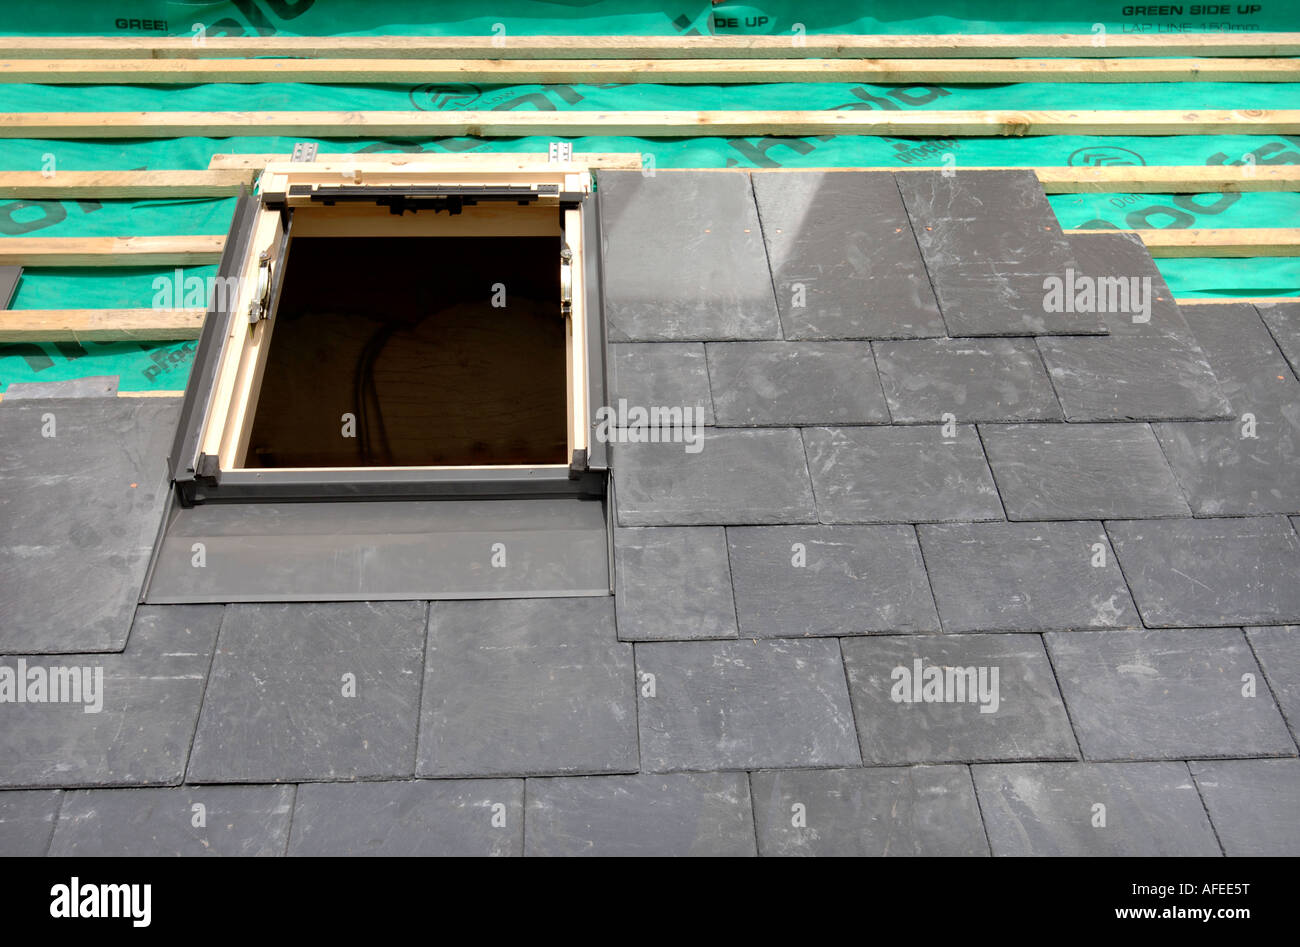 Roofing Vorbereitung Asphaltschindeln Installation auf Haus Bau Holzdach  mit Bitumen Spray und Schutz Seil, Sicherheit Kit. Roofing constru  Stockfotografie - Alamy